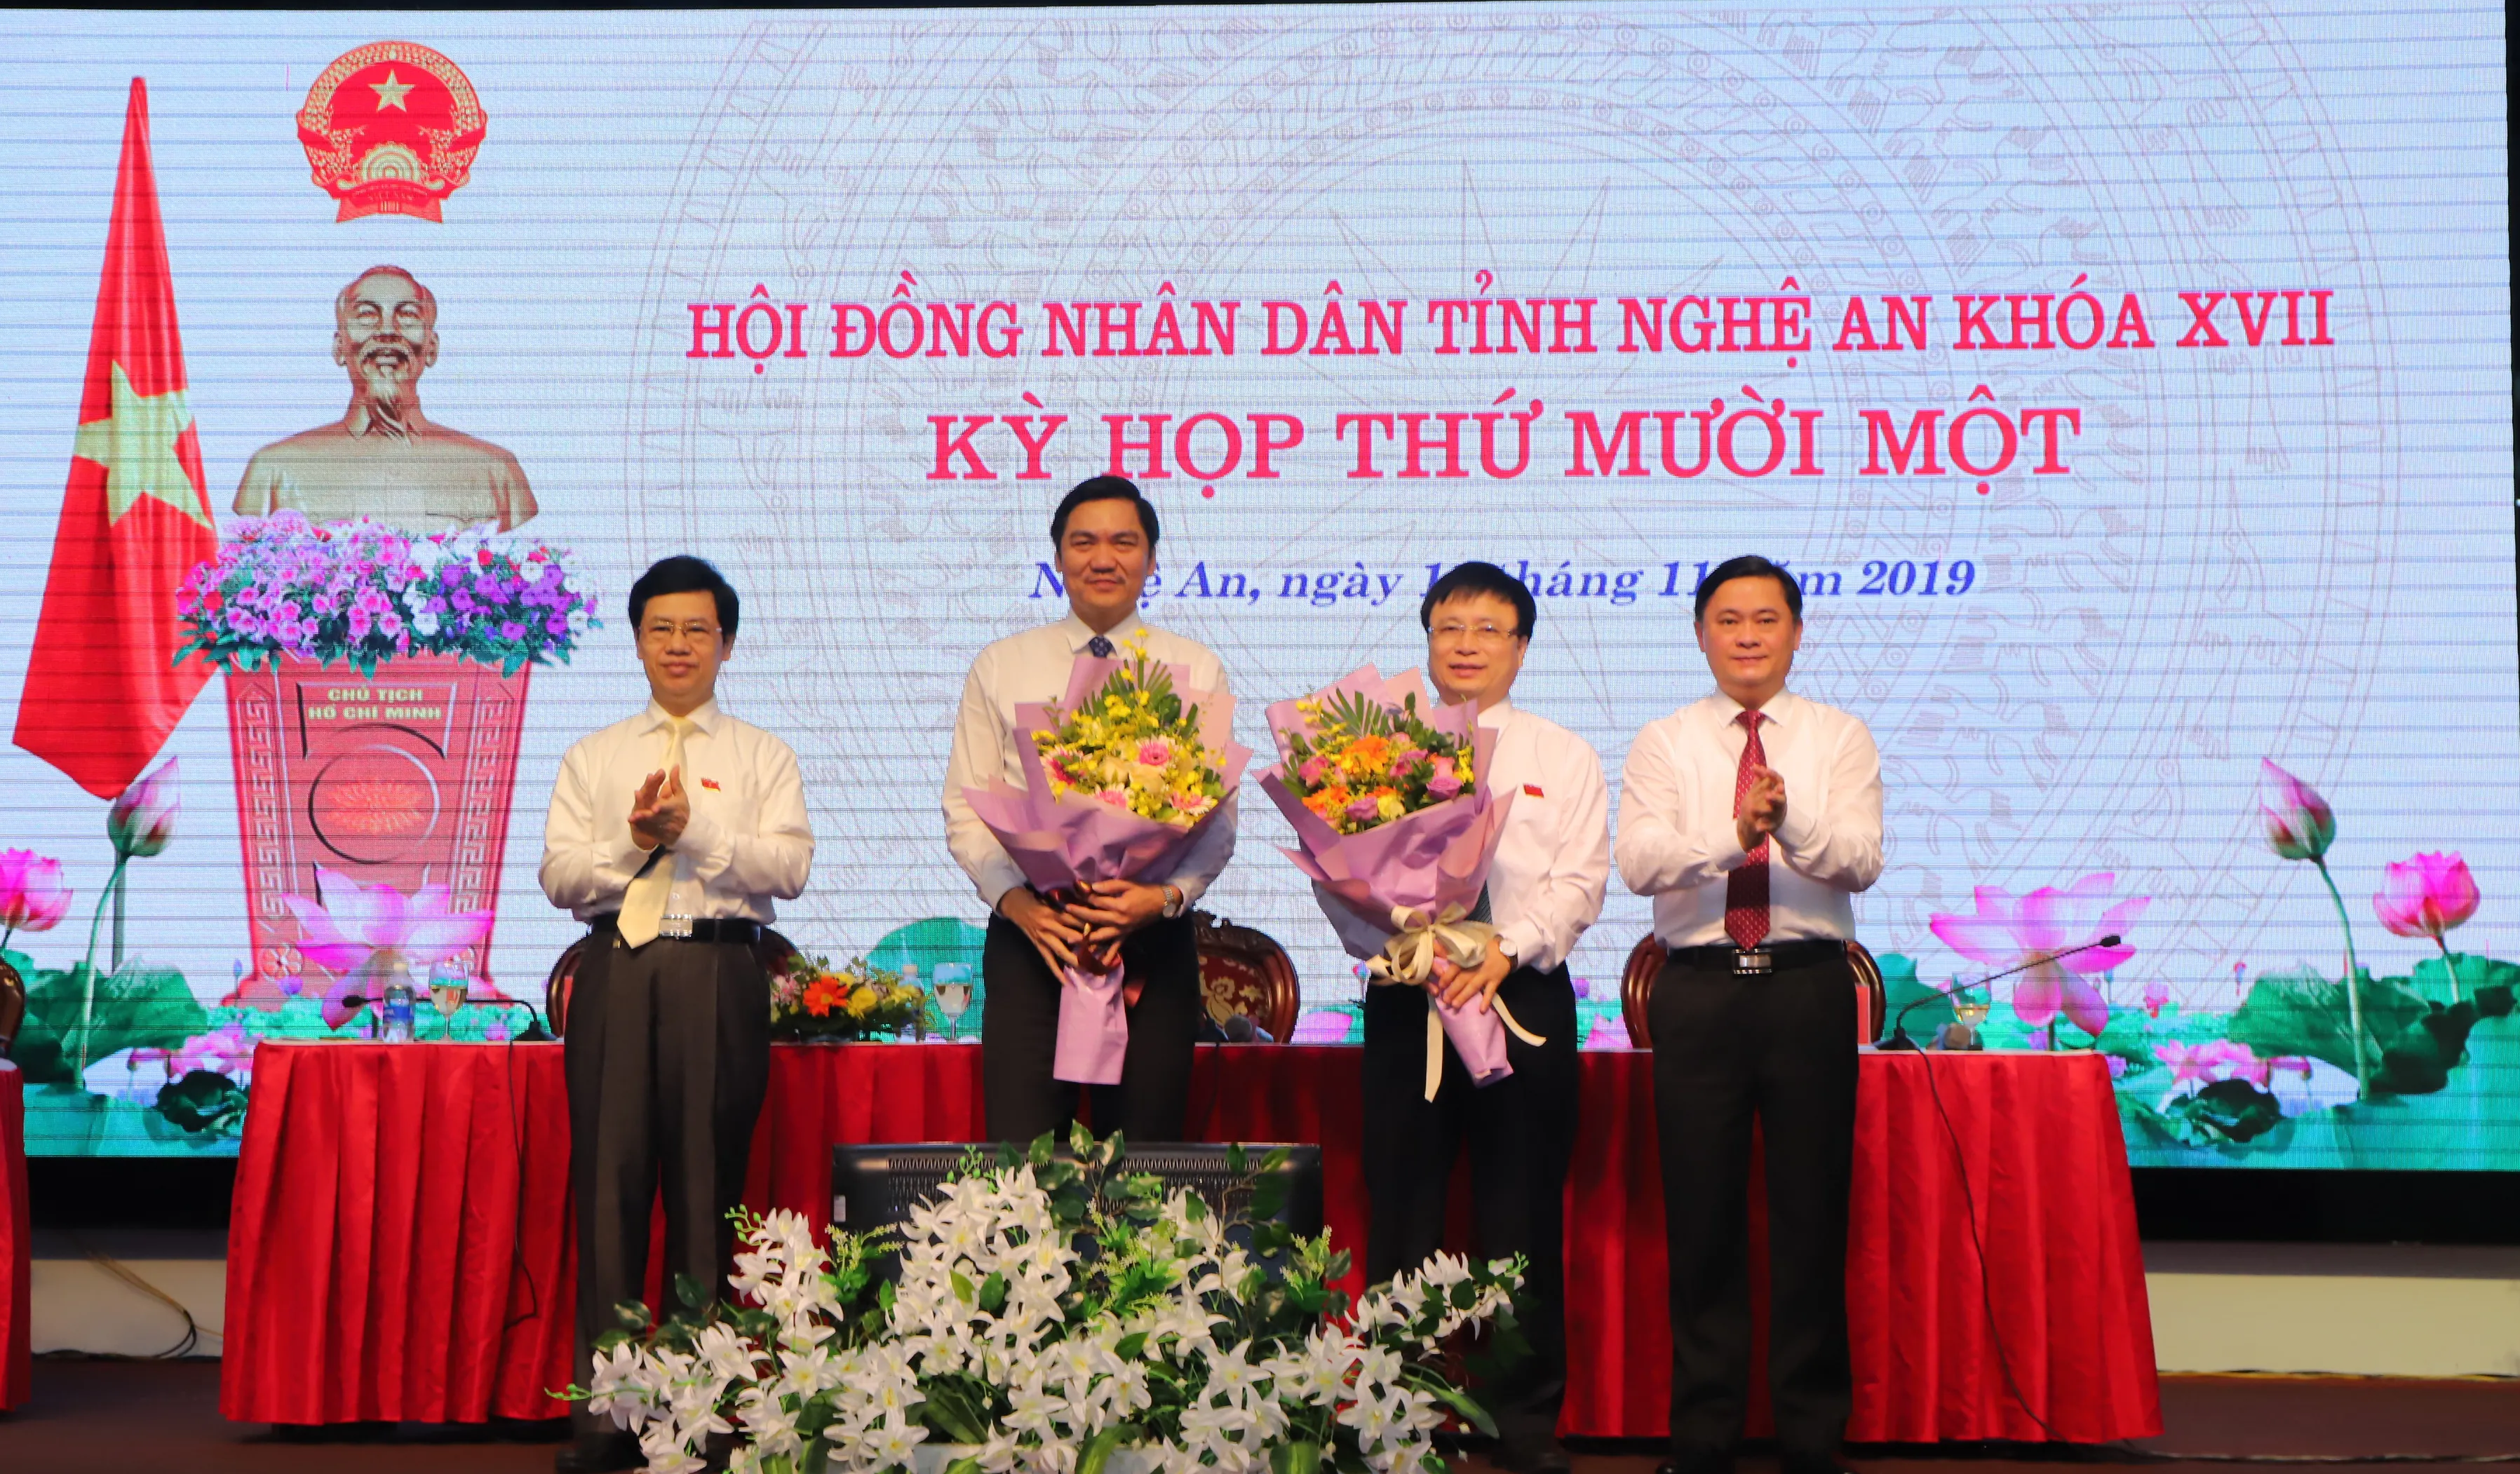 Thủ tướng phê chuẩn bầu bổ sung hai Phó Chủ tịch UBND tỉnh Nghệ An